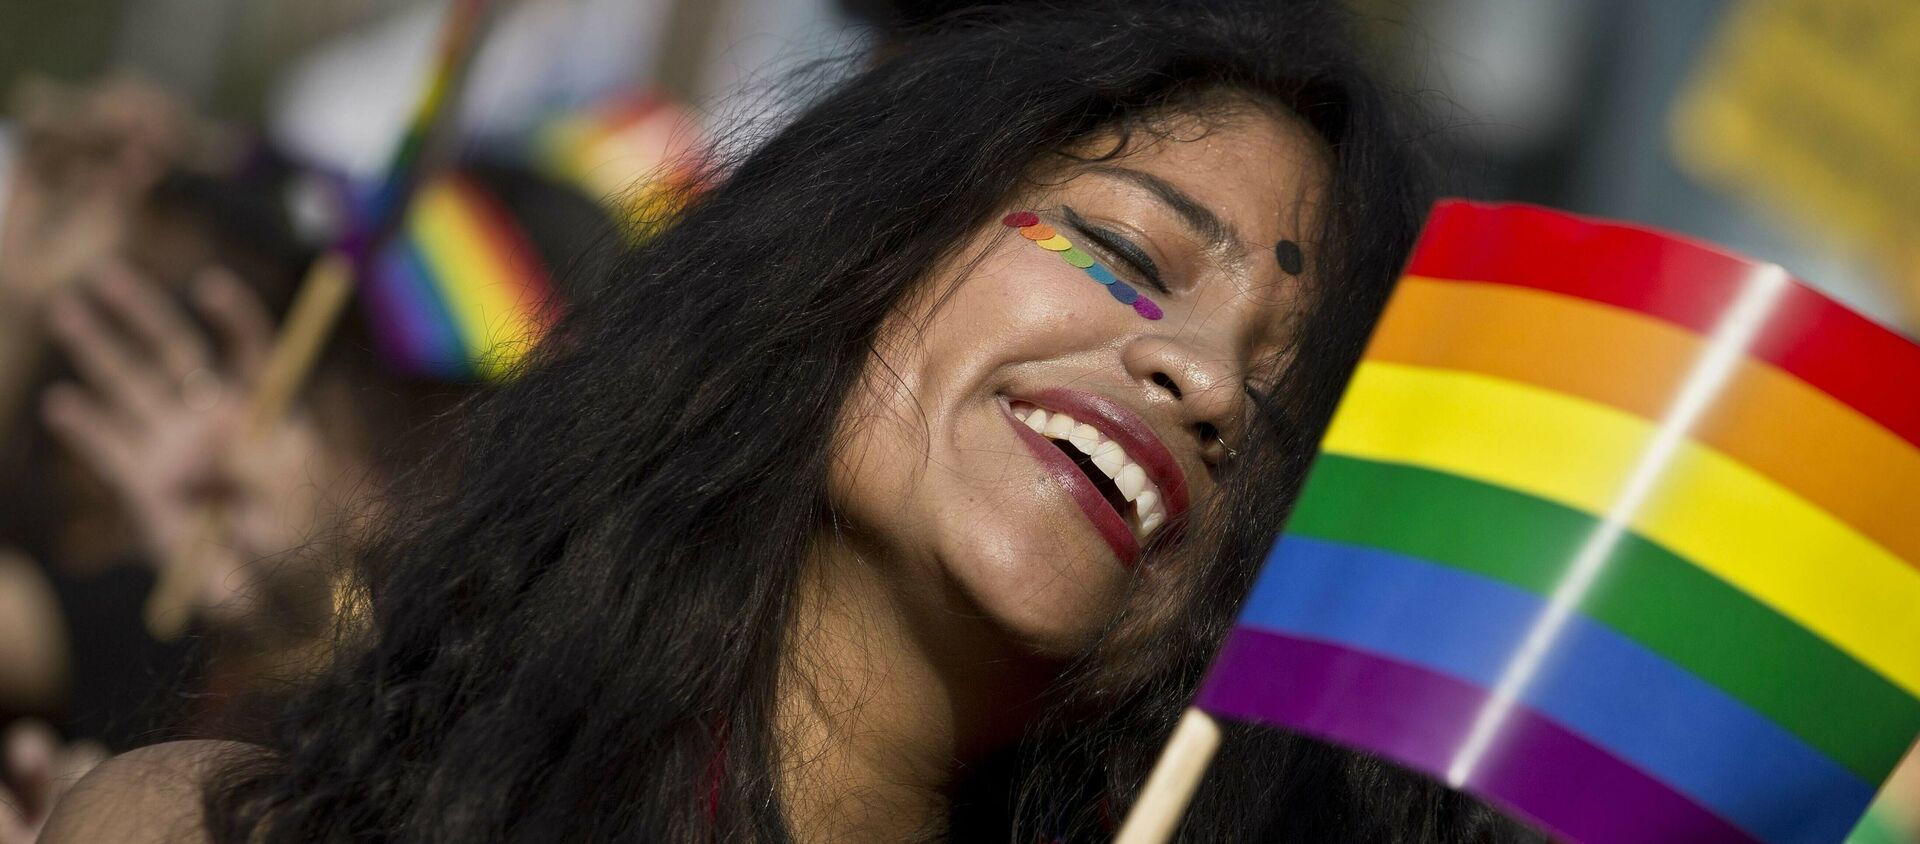 Una participante de la marcha por el Día Internacional del Orgullo LGTB en la India - Sputnik Mundo, 1920, 17.05.2019